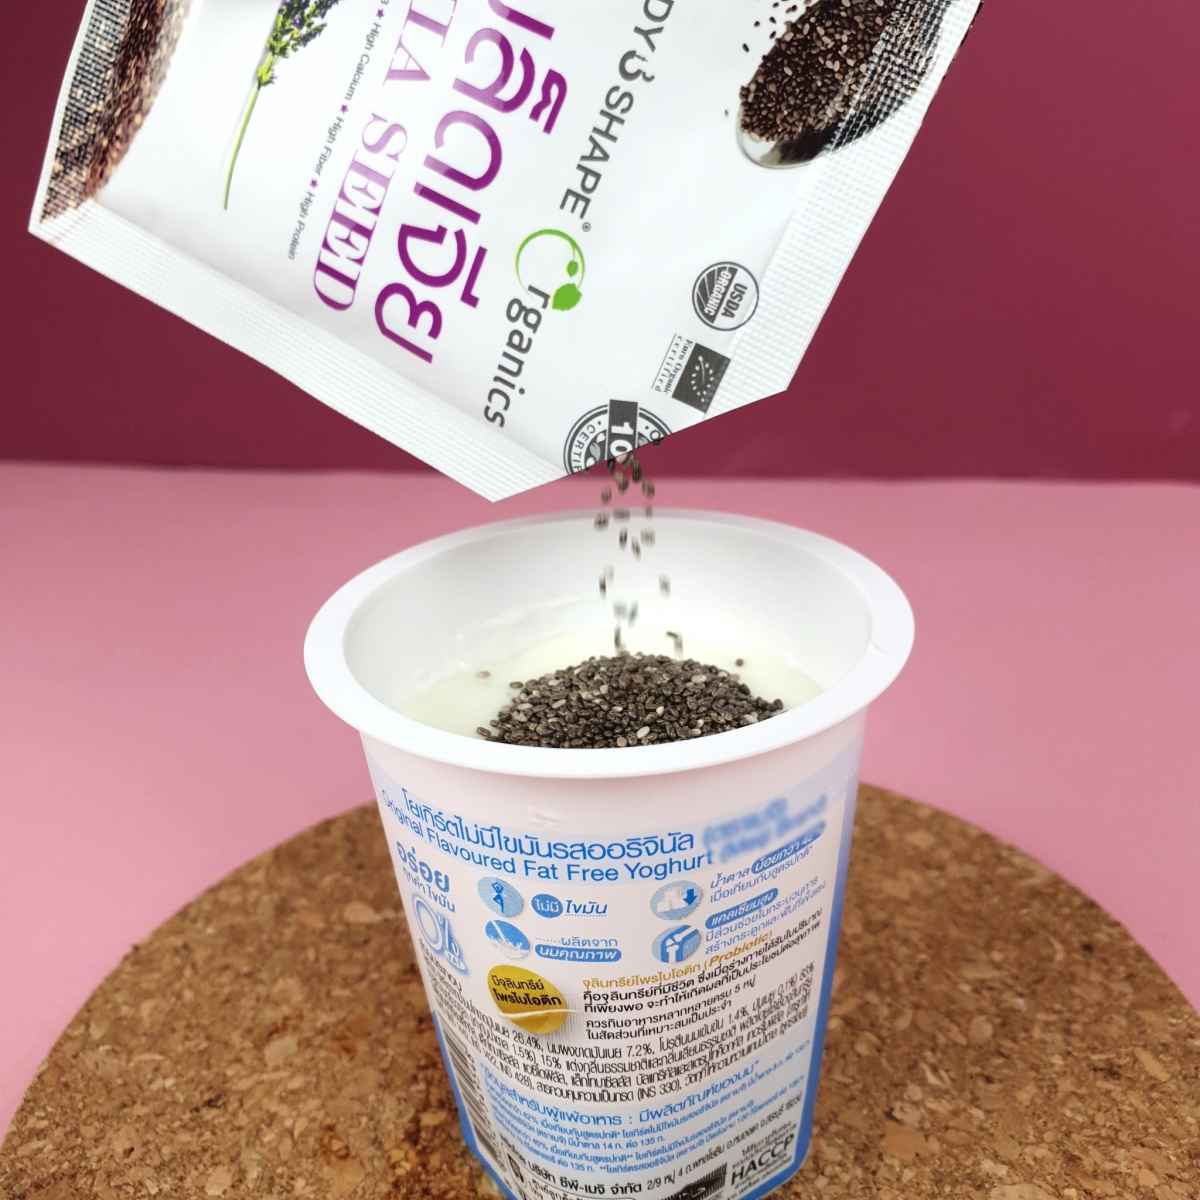 Chia Seeds with yogurt